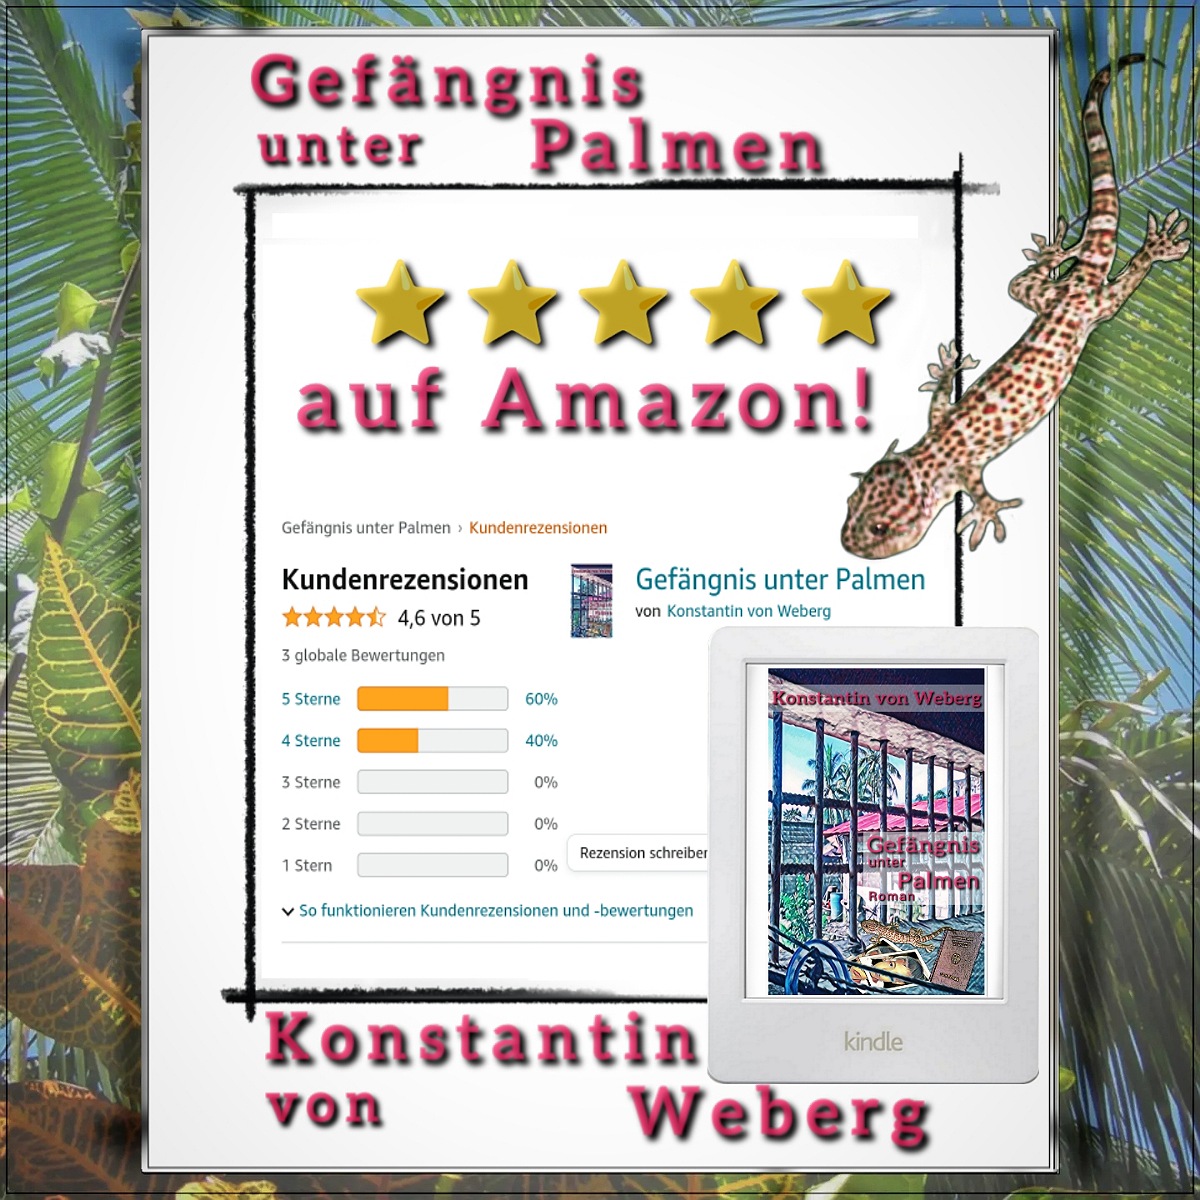 Ganz tolles Ostergeschenk: Amazon-Bestseller, Thriller und Drama! Das Buch: ‚Gefängnis unter Palmen‘